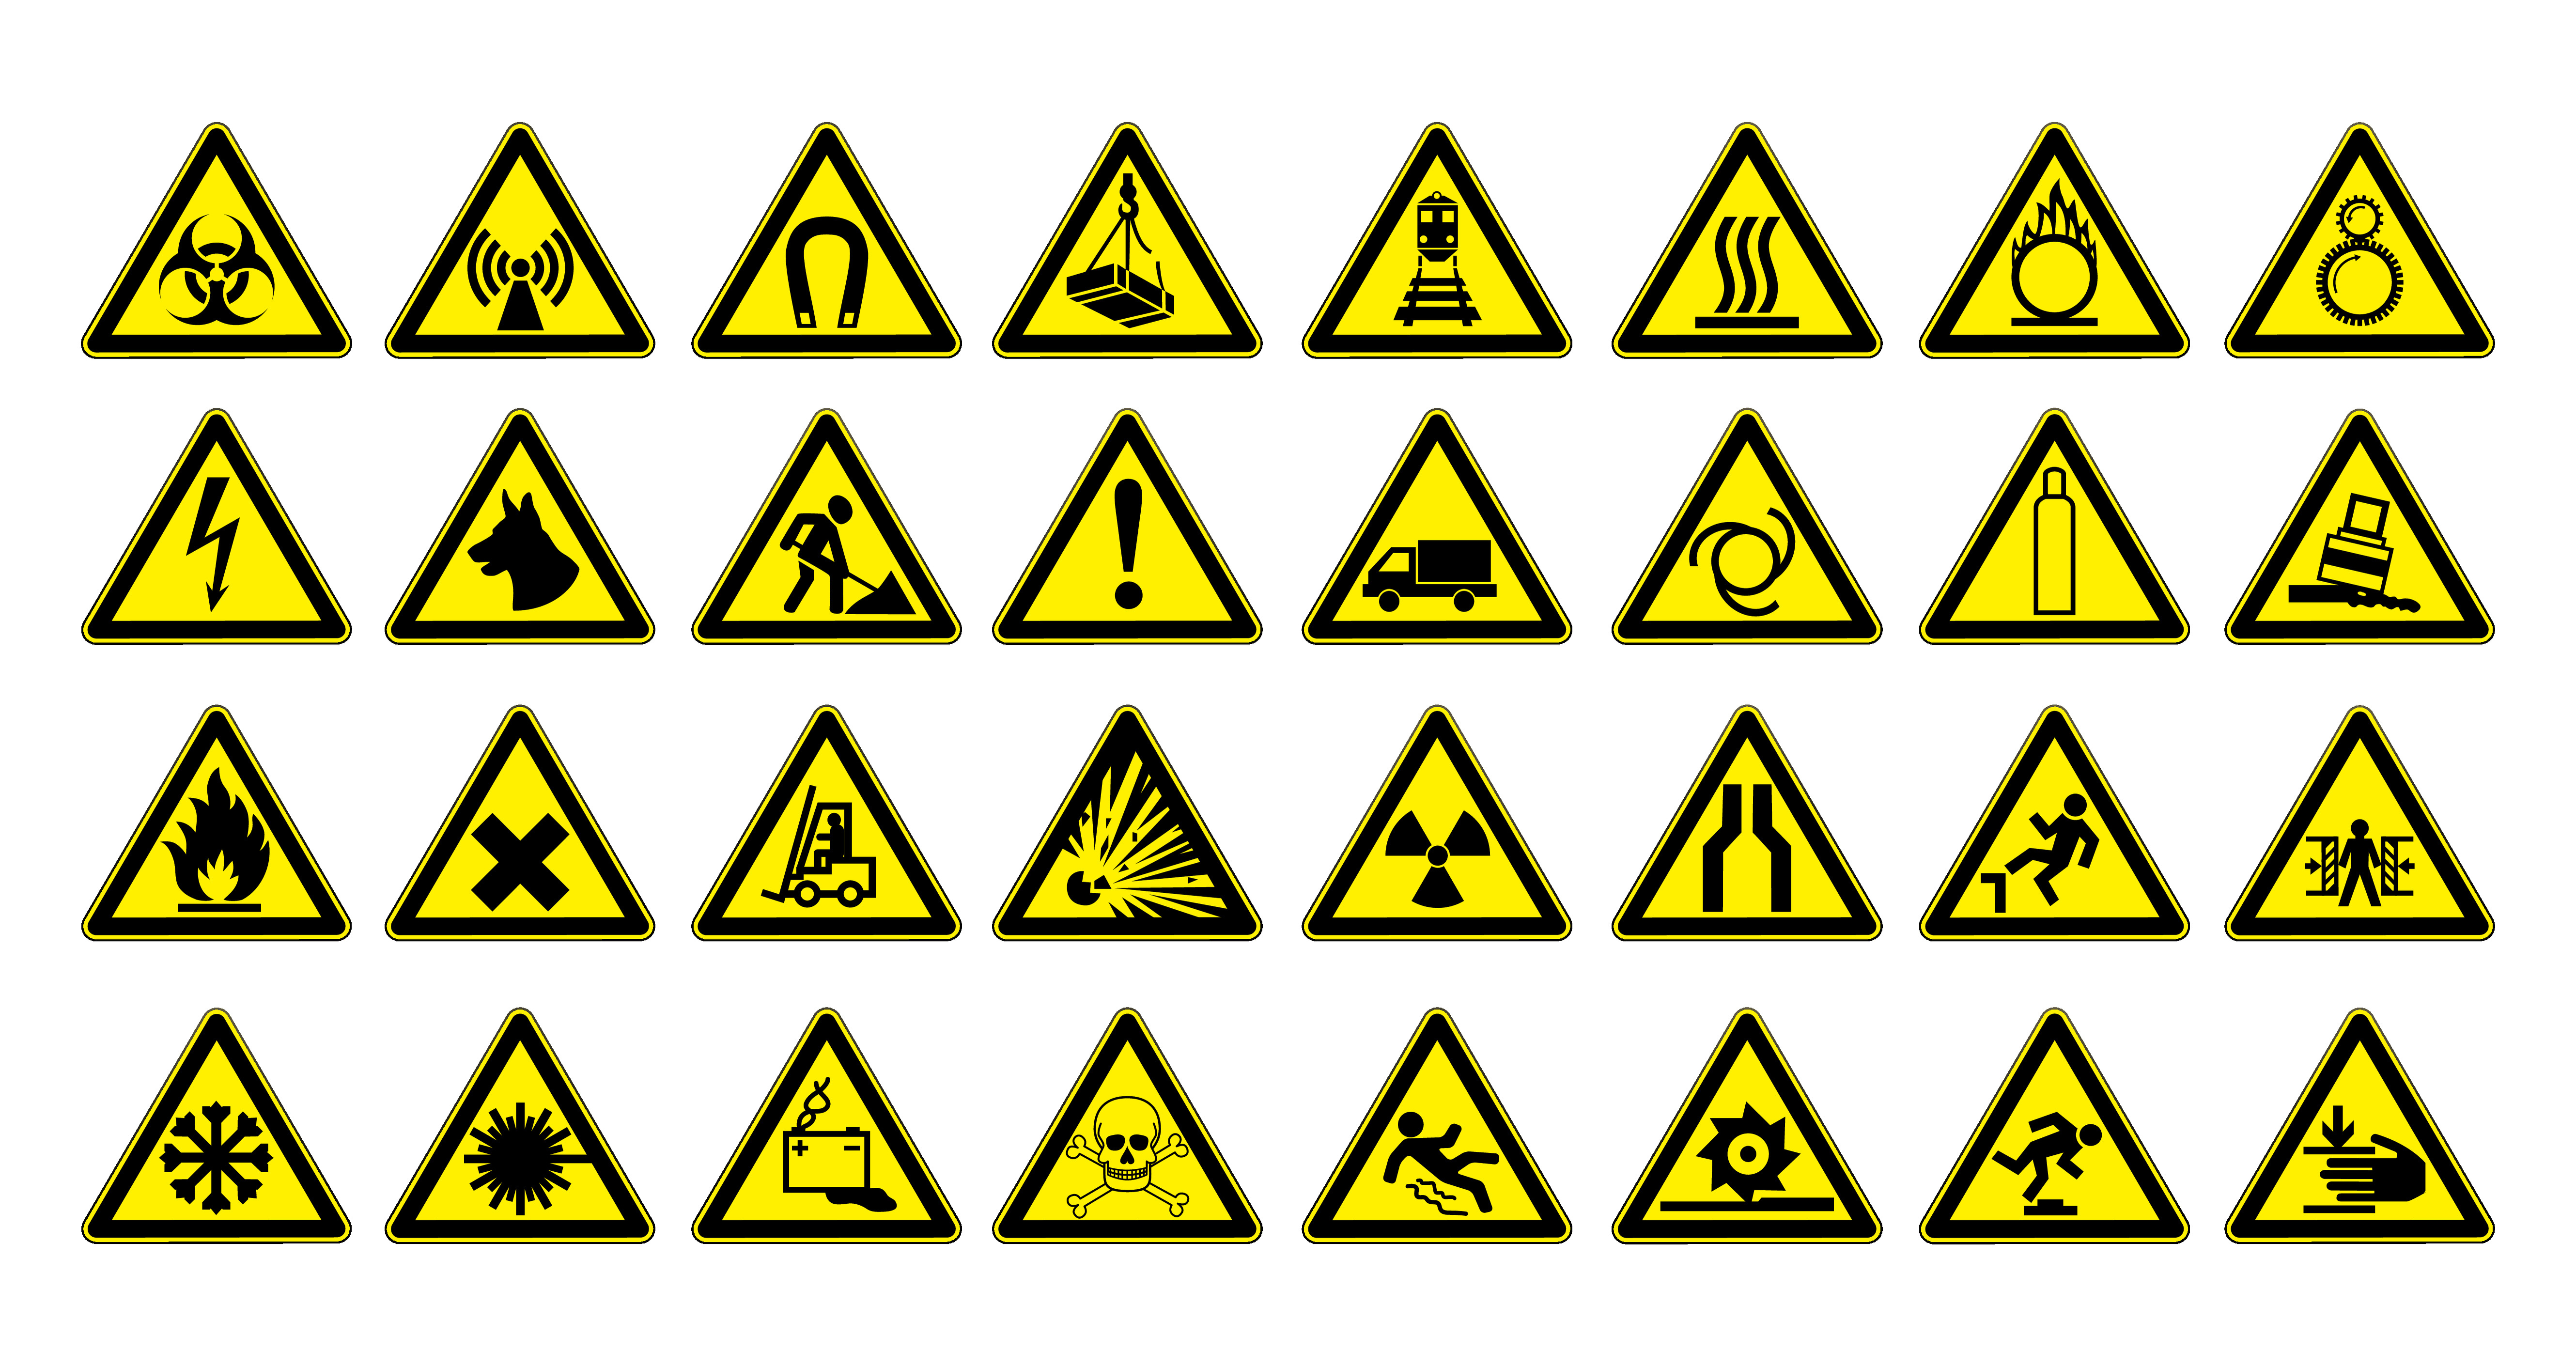 32 Warnzeichen zur Sicherheit am Arbeitsplatz als gelbe Dreiecke mit schwarzem Rand und Symbolen